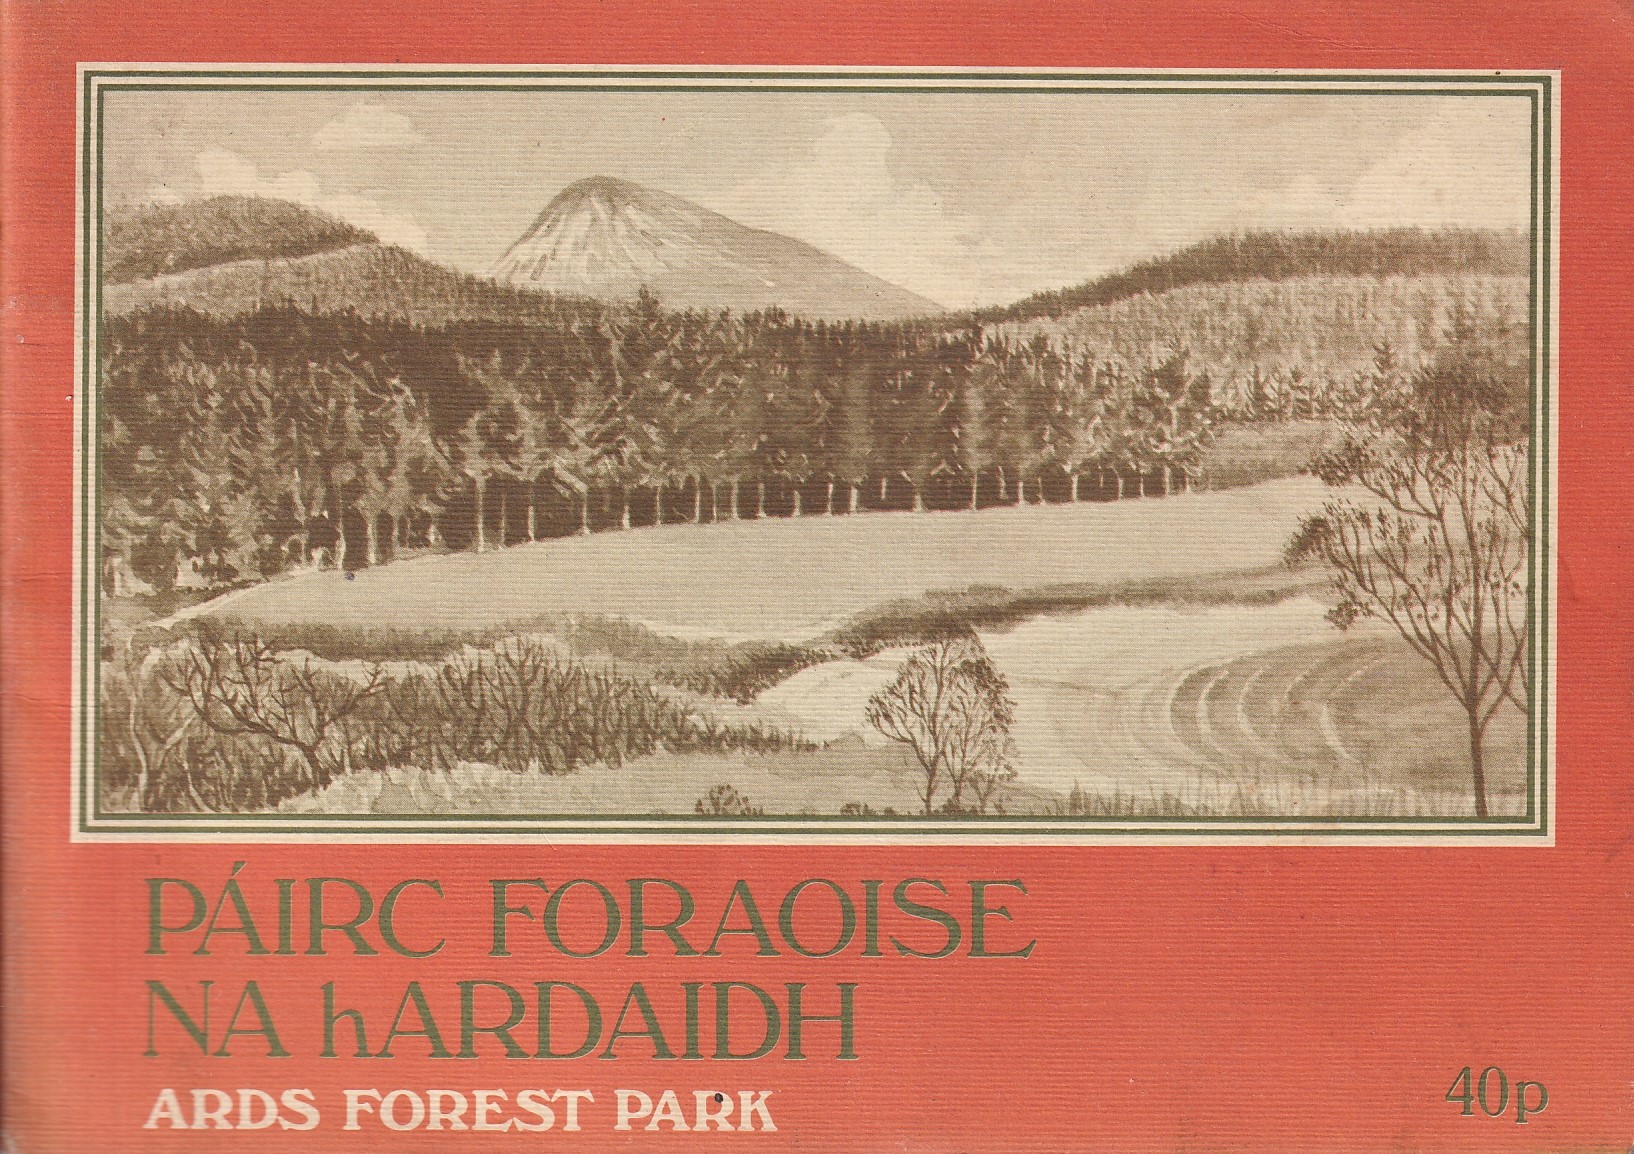 Páirc Foraoise na hArdaidh: Ards Forest Park | Forest and Wildlife Service | Charlie Byrne's